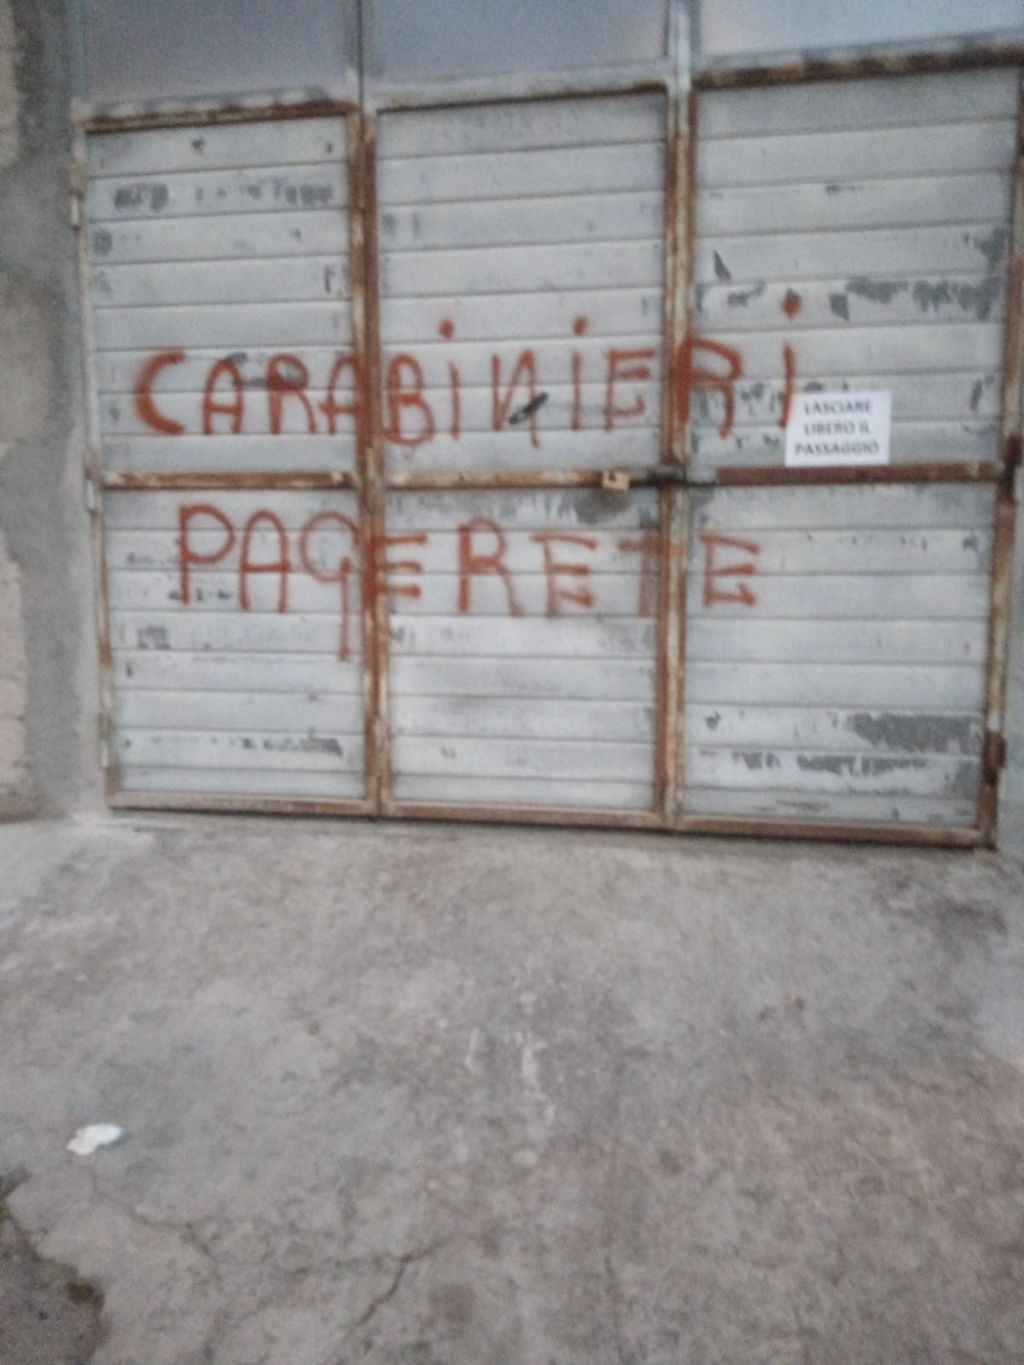 Una delle scritte contro i carabinieri comparsa su una serranda durante il raid vandalico a Ozieri (Sassari)